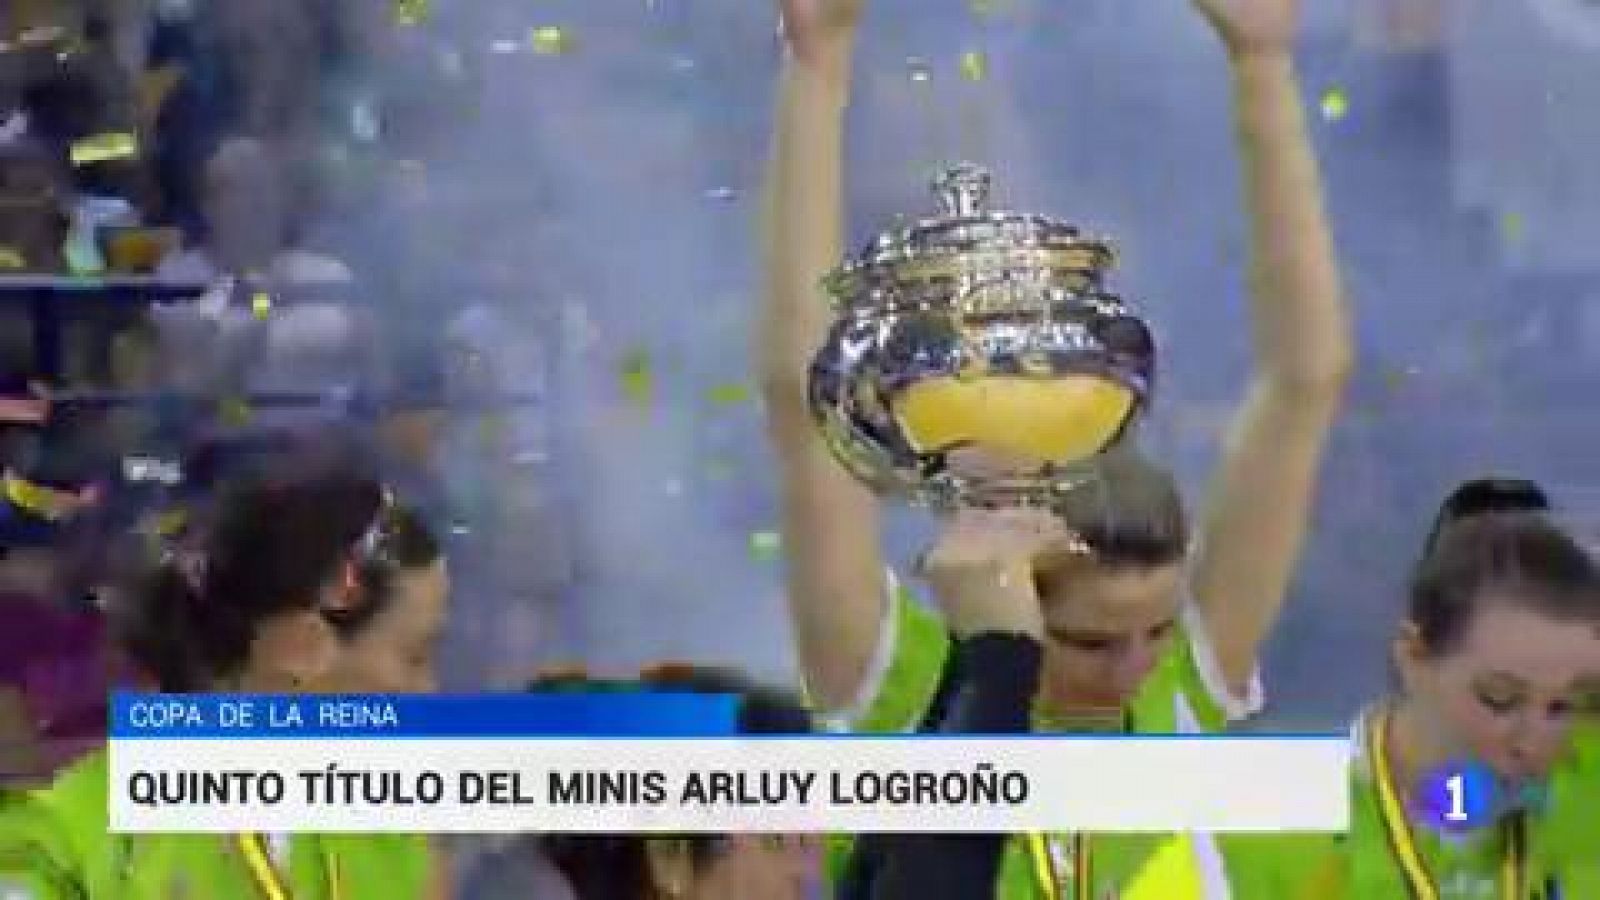 El Minis Arluy Logroño ha extendido su dominio en la Copa de la Reina de voleibol al conquistar su quinto entorchado en los últimos seis años.